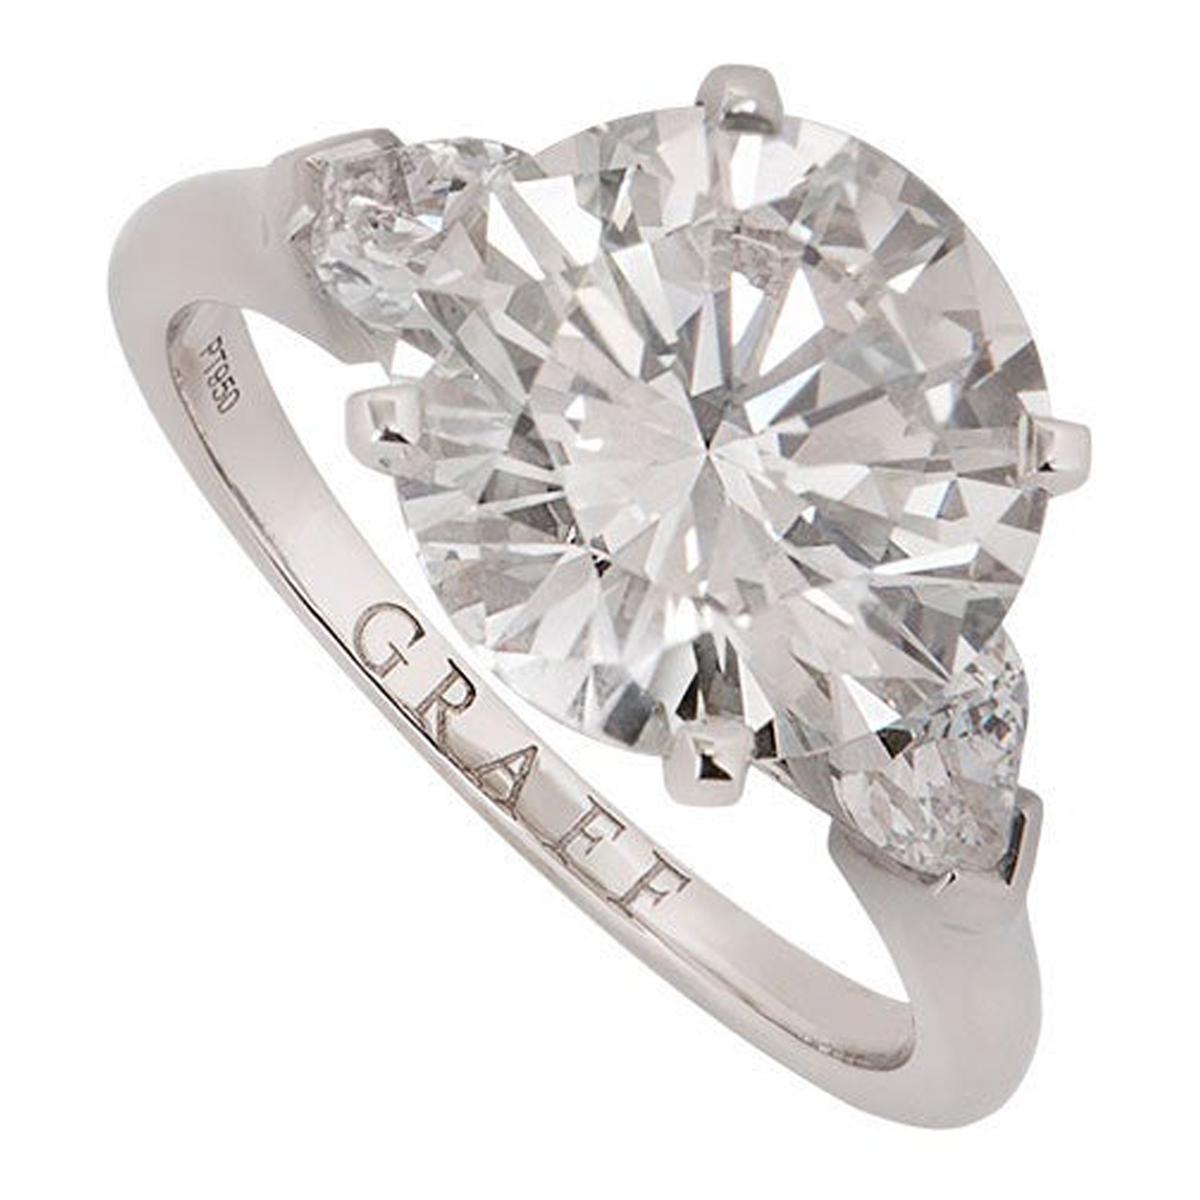 Graff Platinum Round Brilliant Cut Diamond Promise Ring 4.04 Carat GIA Certified